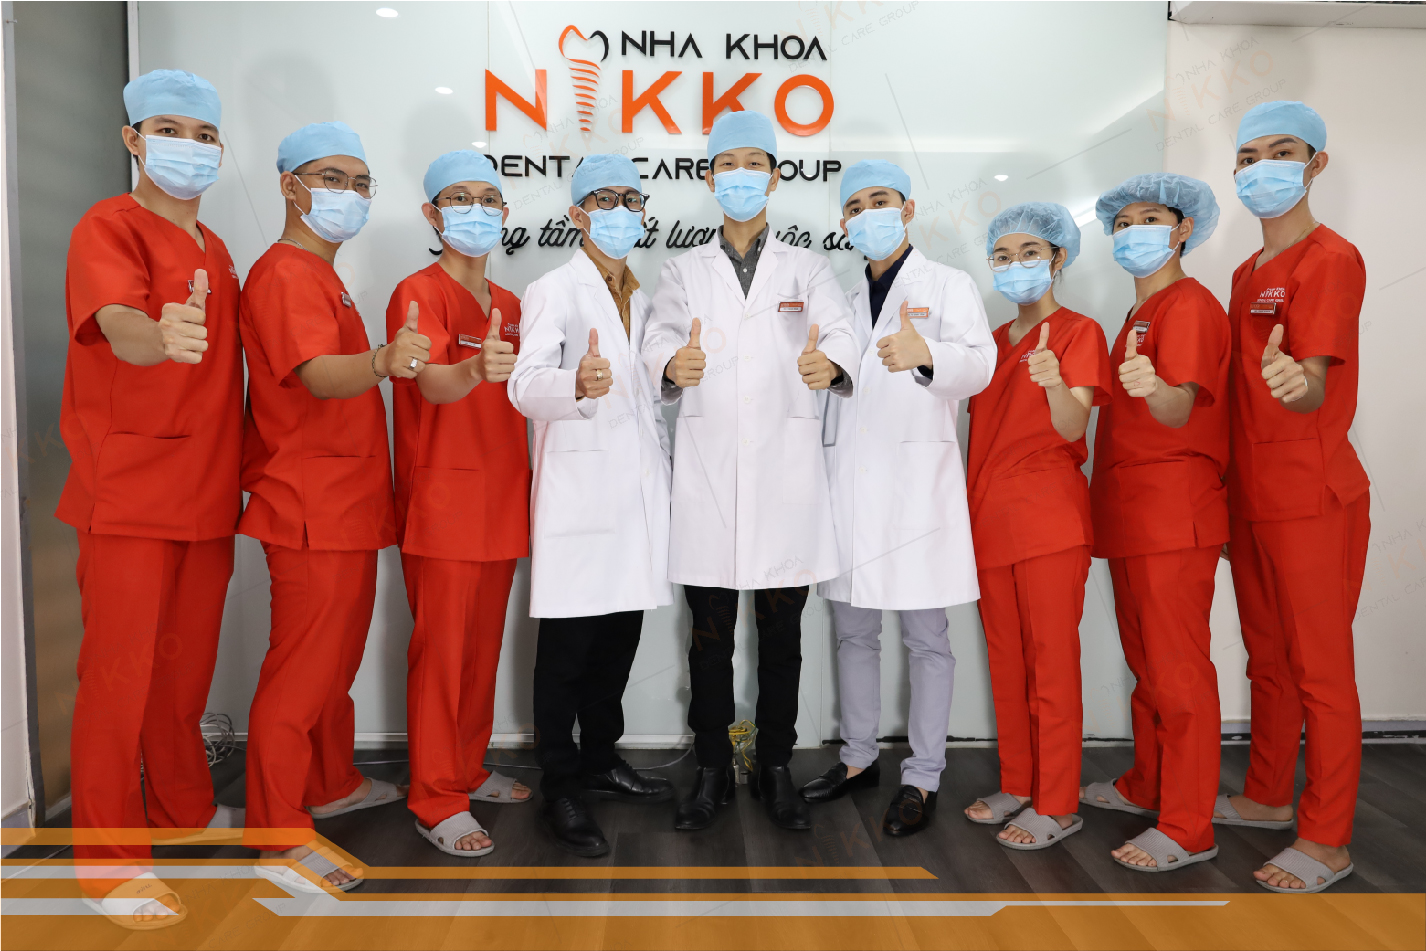 Đội ngũ bác sĩ giàu kinh nghiệm tại Nha Khoa Nikko